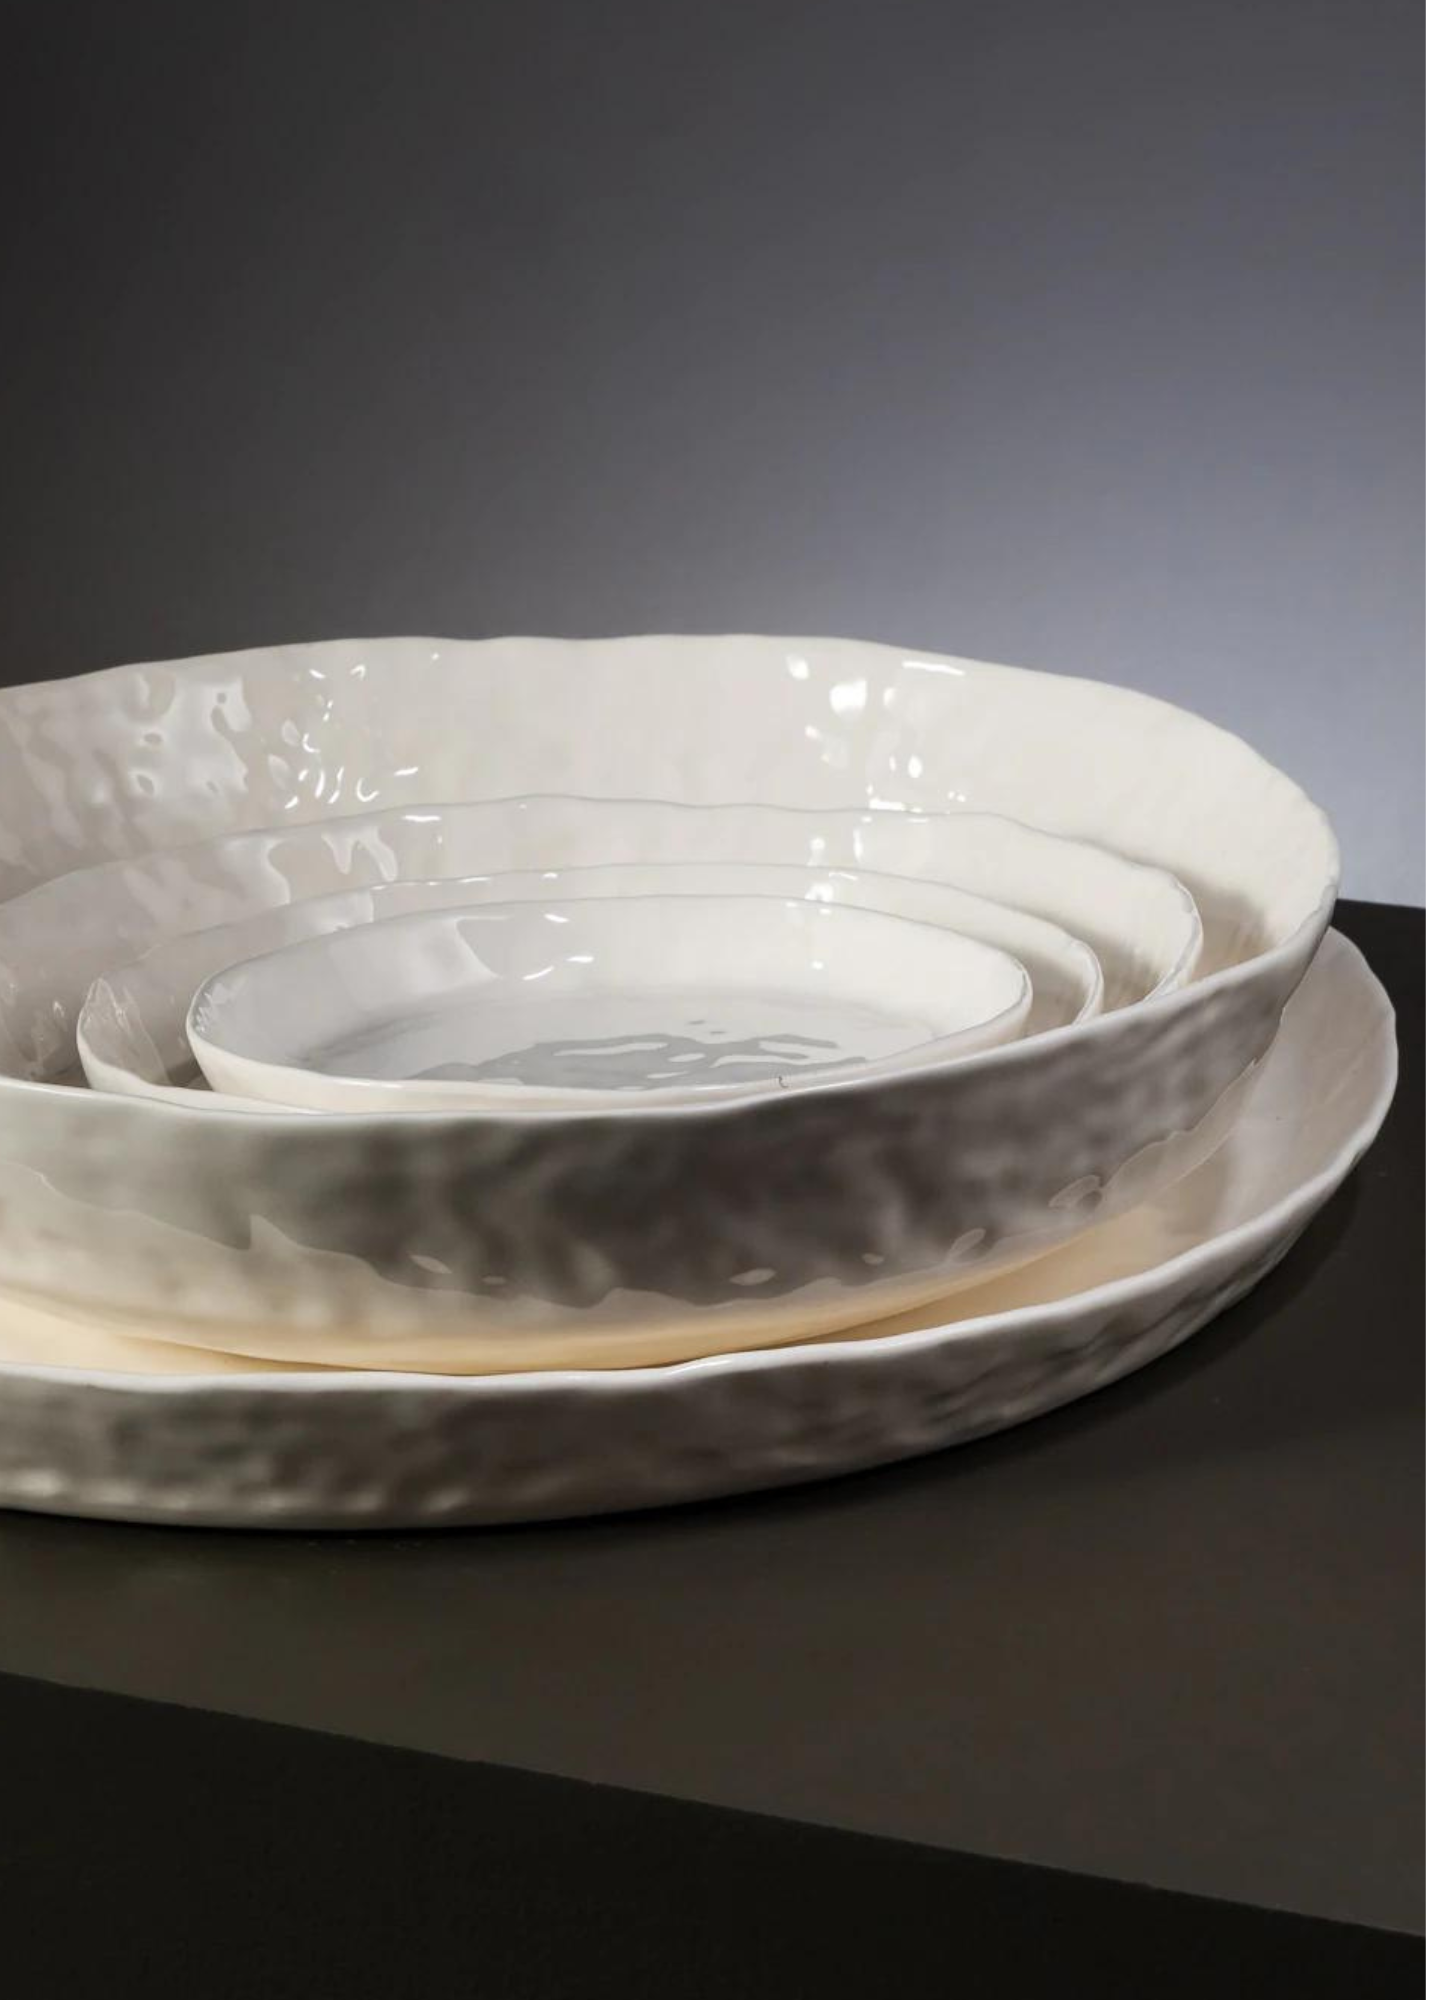 White Ceramic Artisan Serving Platter (7069986685107)